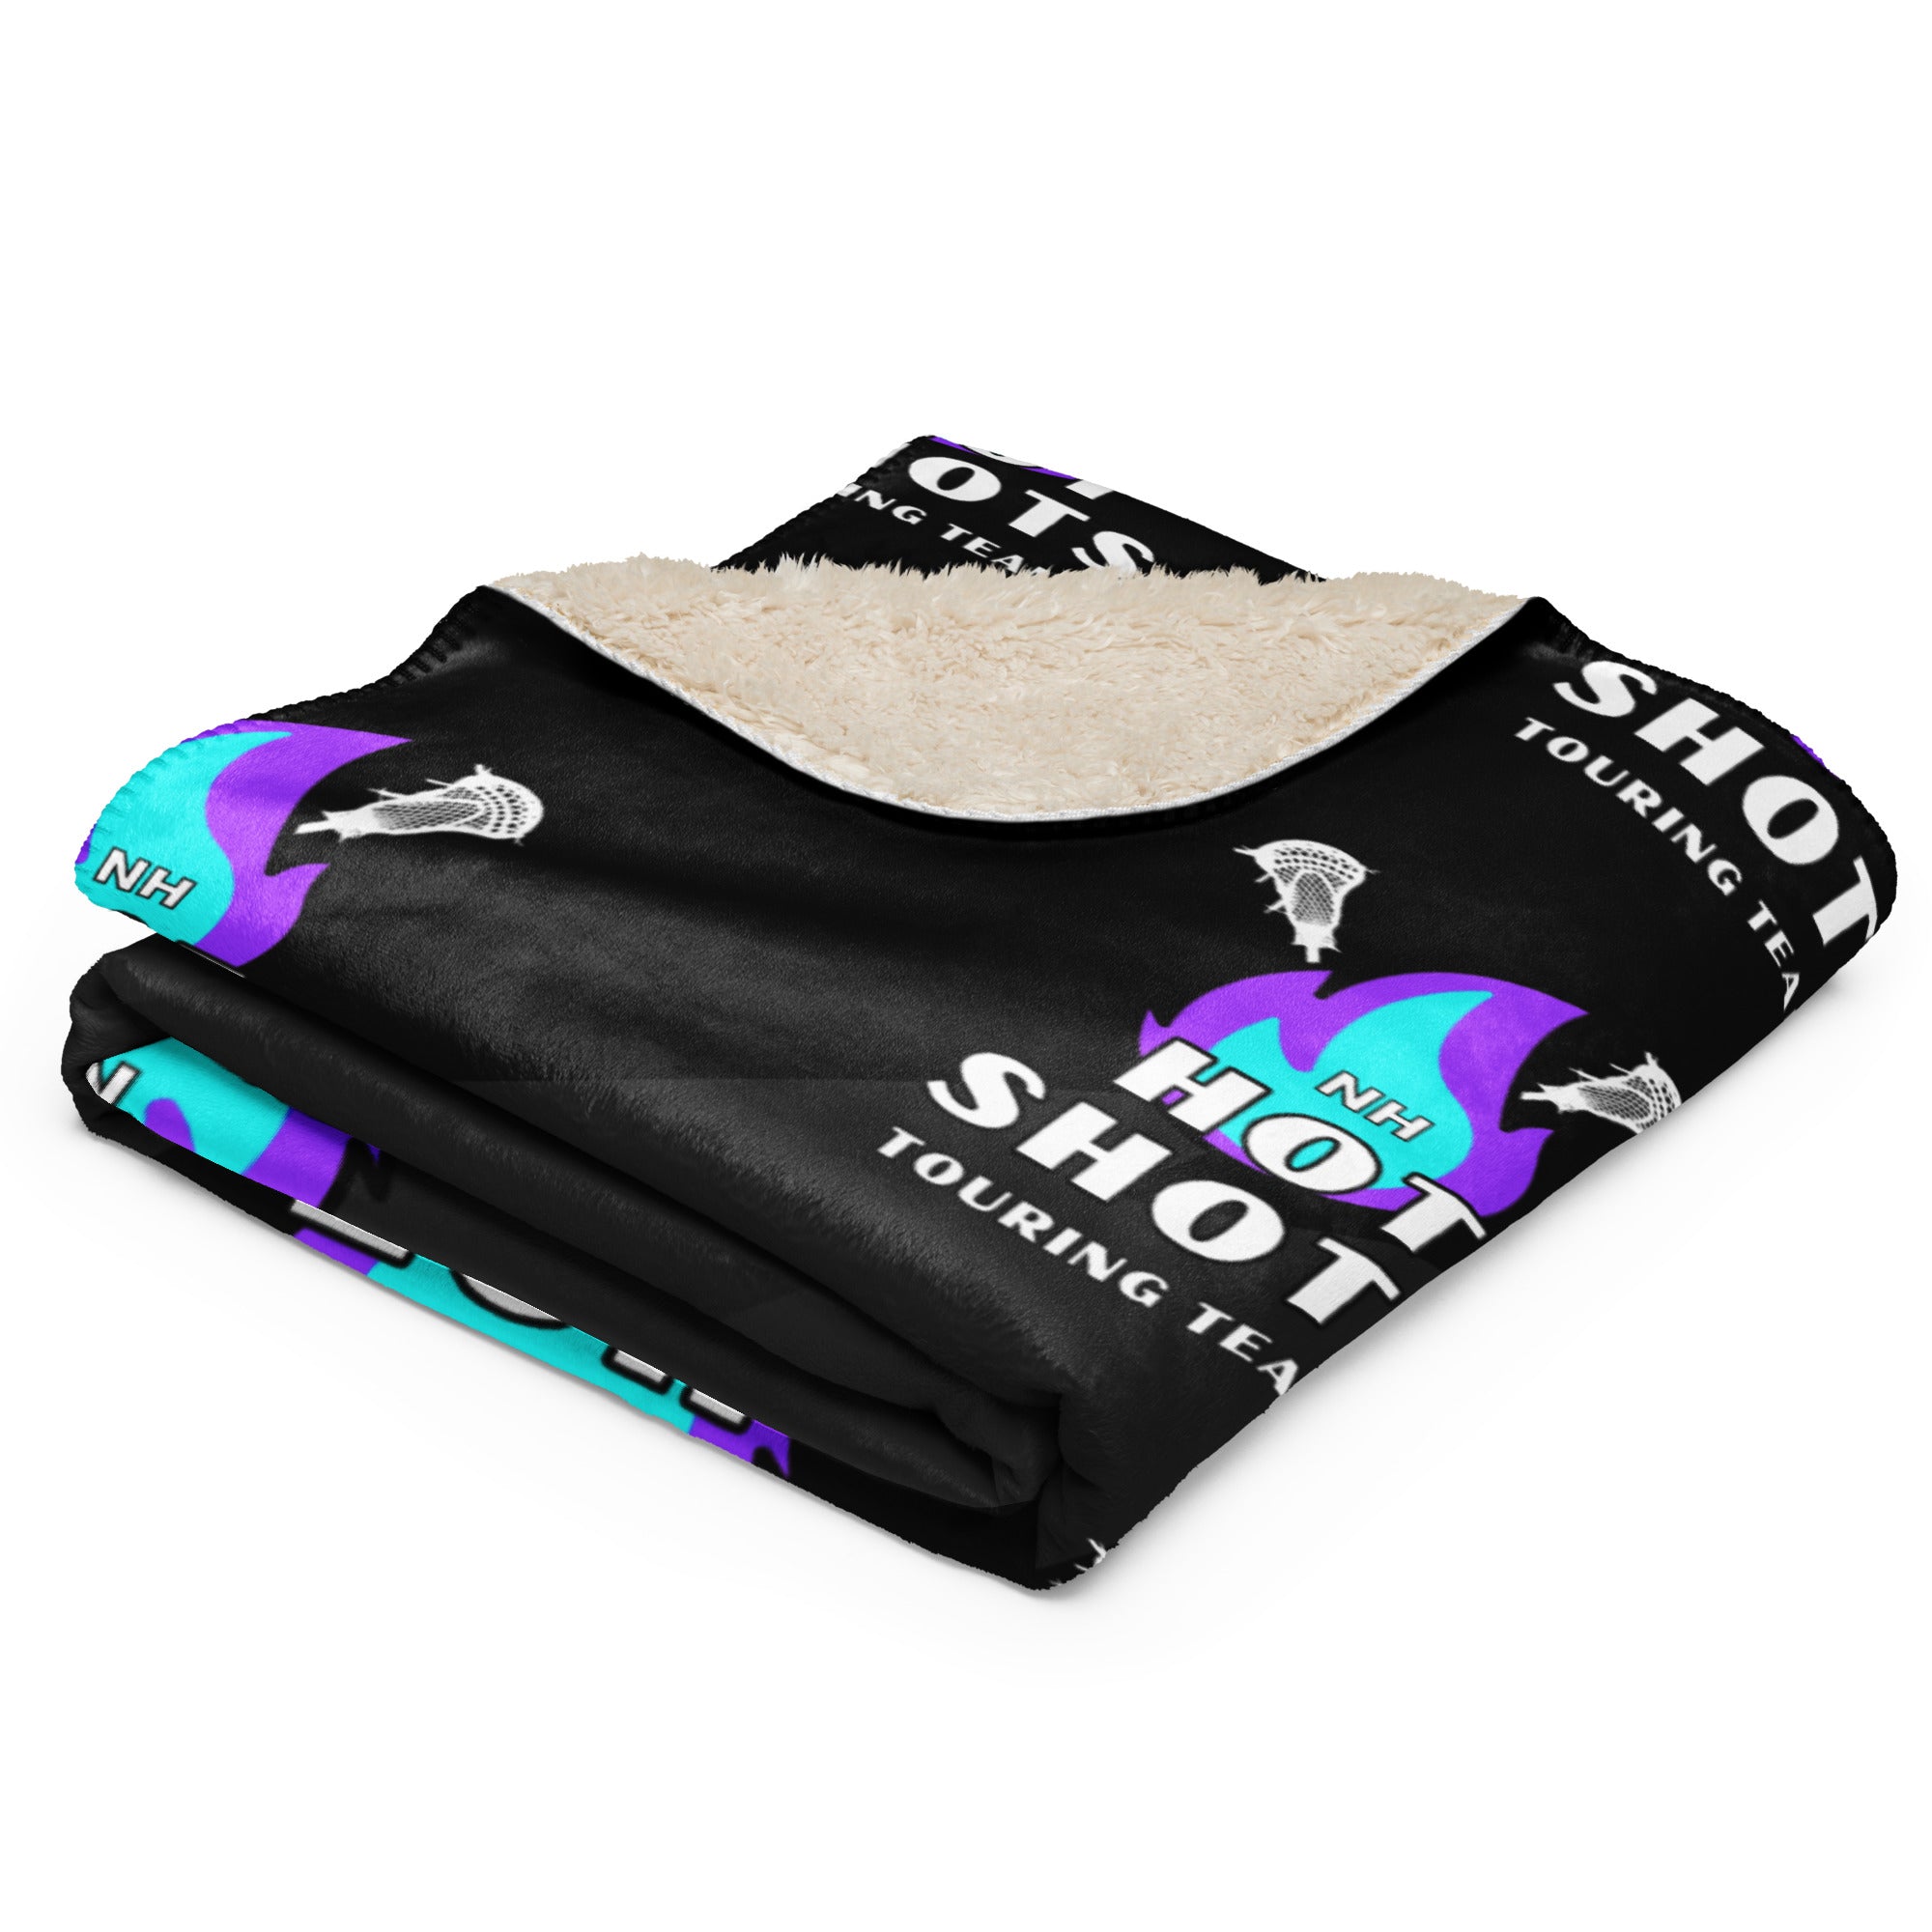 NH Hot Shots Sherpa blanket